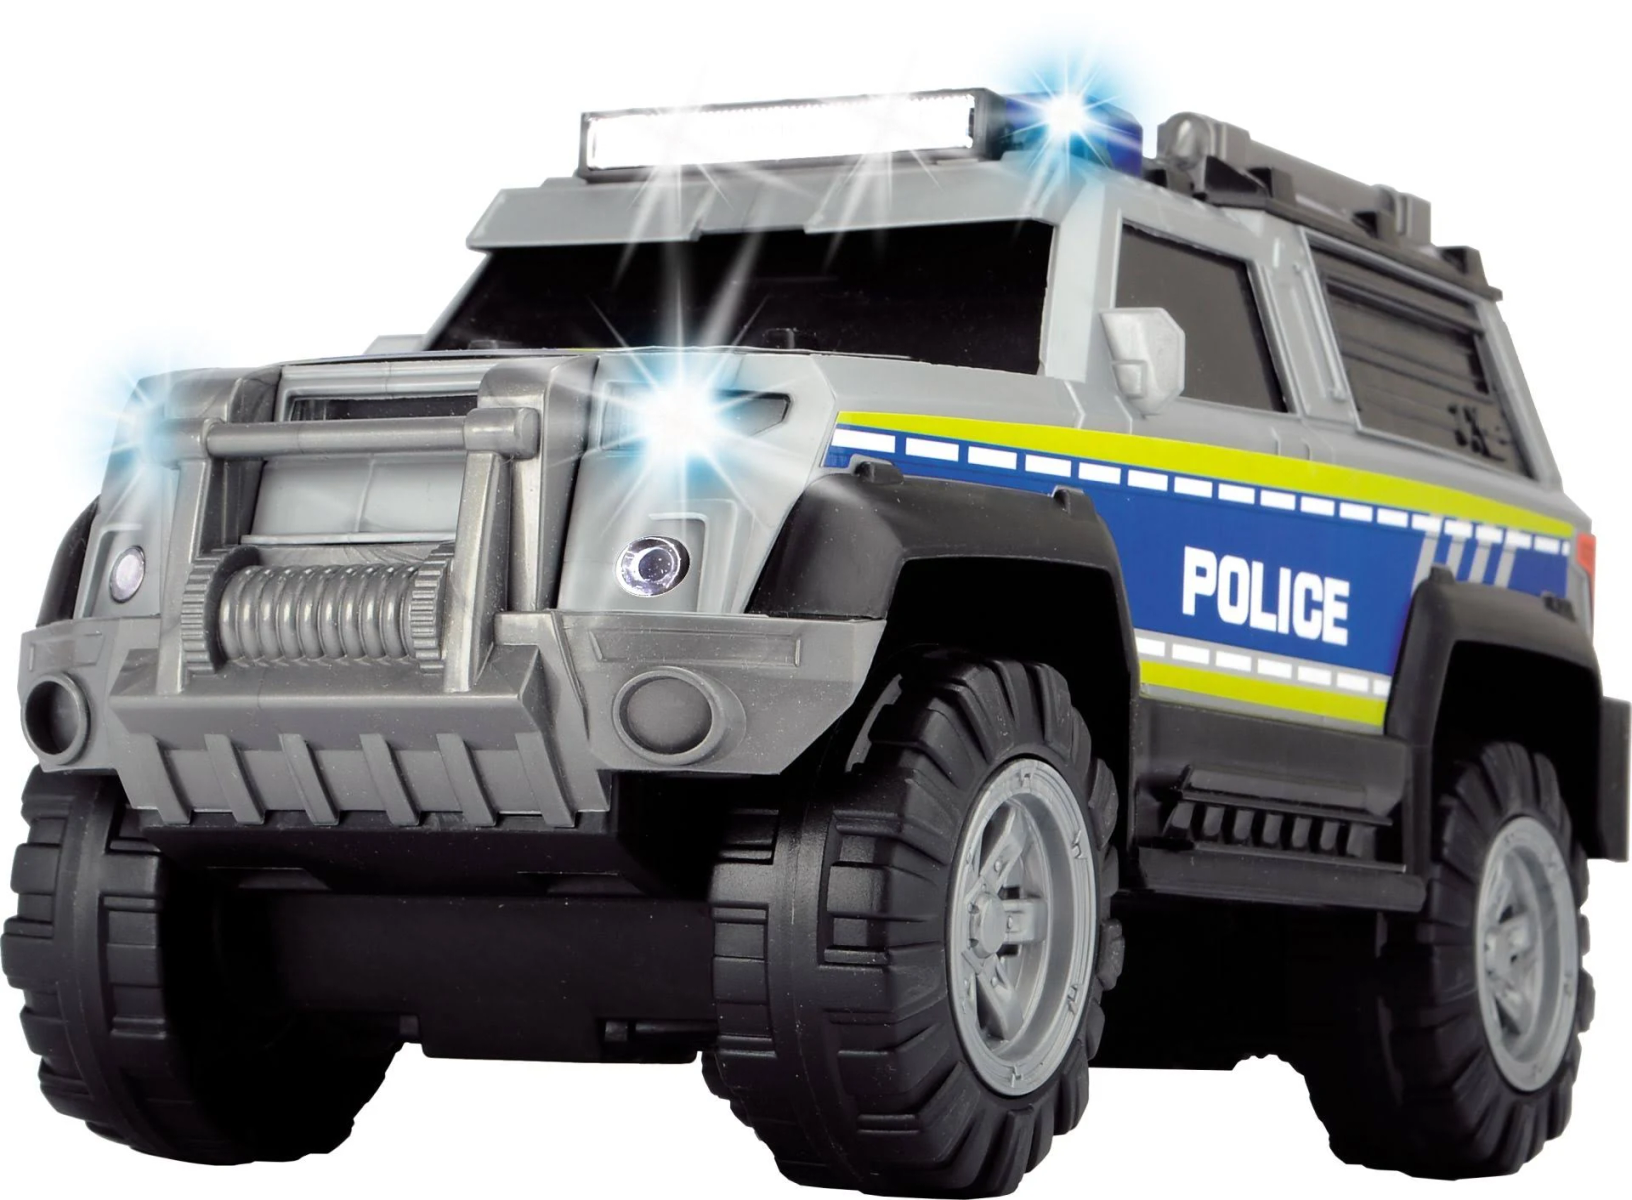 DICKIE TOYS 203306003 POLICE Spielzeugauto SUV Mehrfarbig